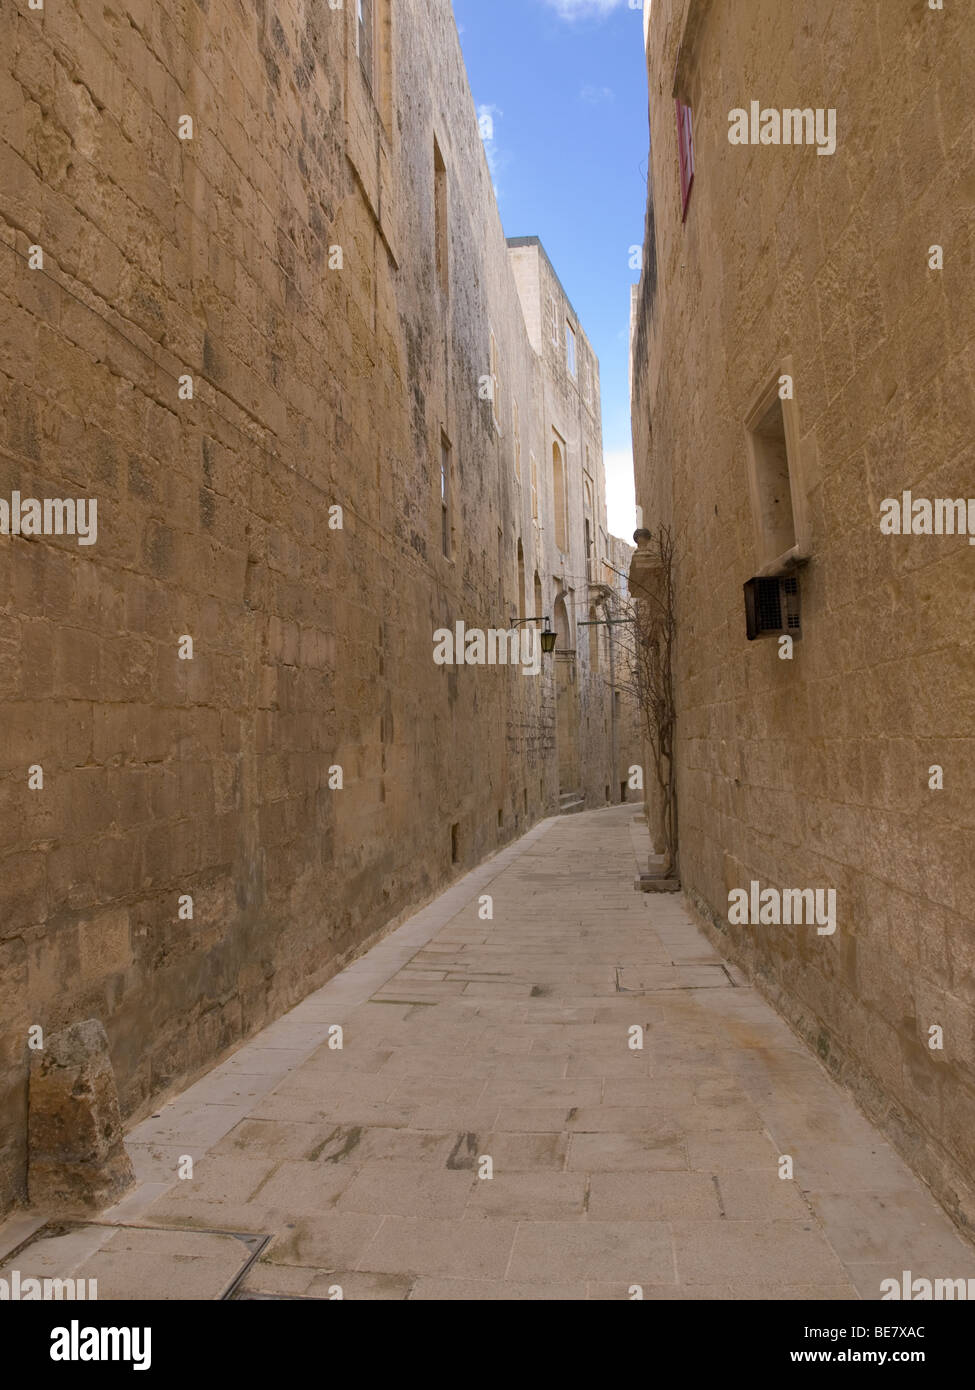 Un quartier calme, ruelle étroite dans la ville fortifiée de Mdina (Rabat), Malte. Banque D'Images